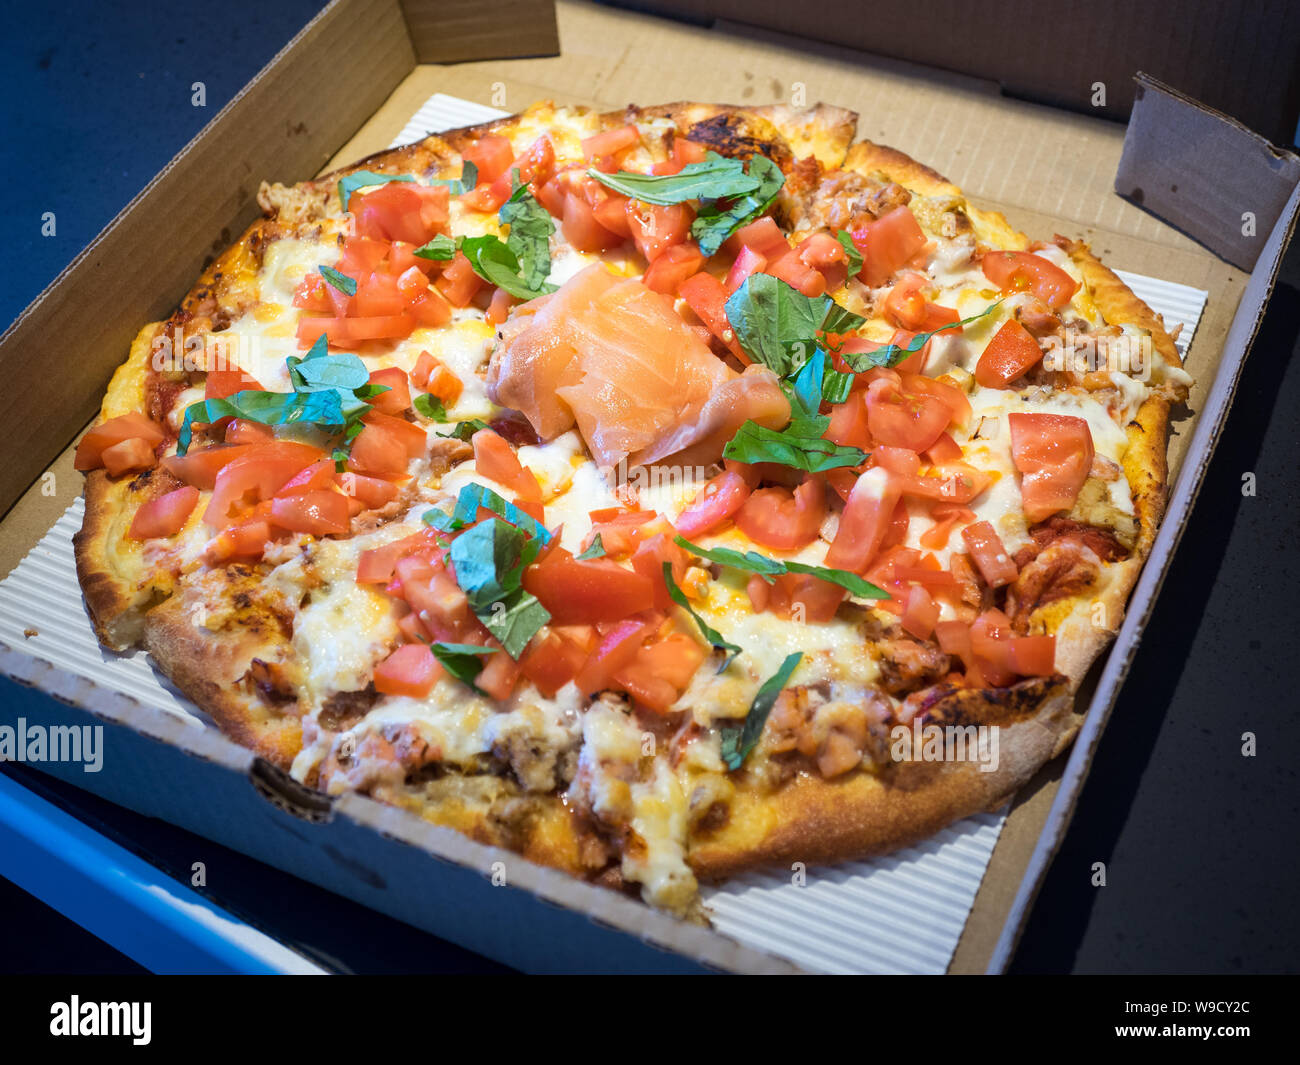 A mist pizza (smoked salmon, crab, scallions, and tomato pizza) from Steveston Pizza Company in Steveston Village, Richmond, British Columbia, Canada. Stock Photo